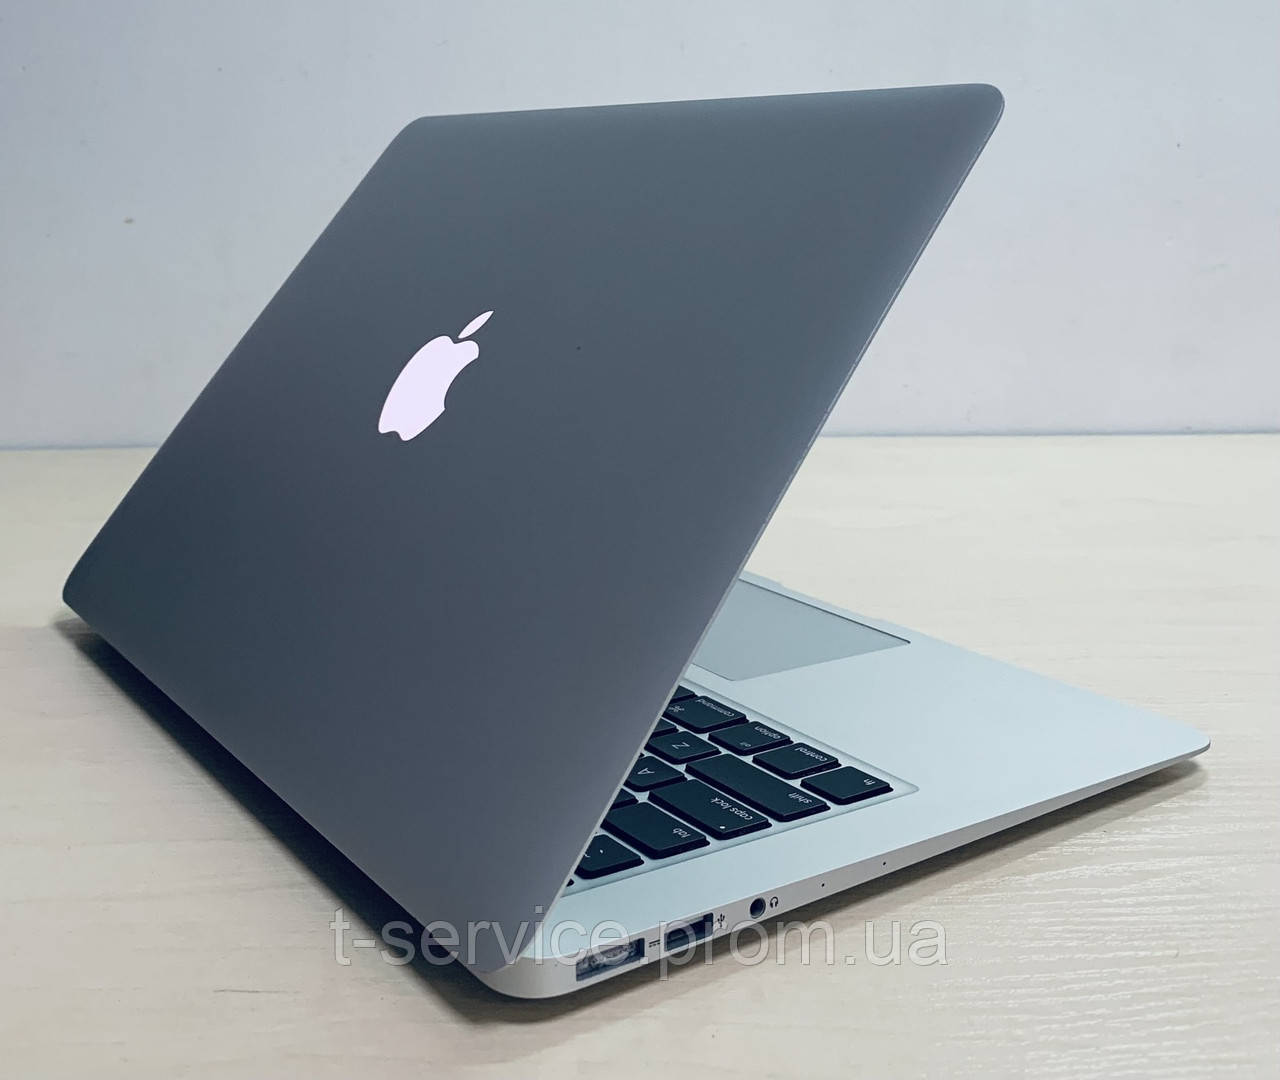 Купить Ноутбук Apple Бу Киев